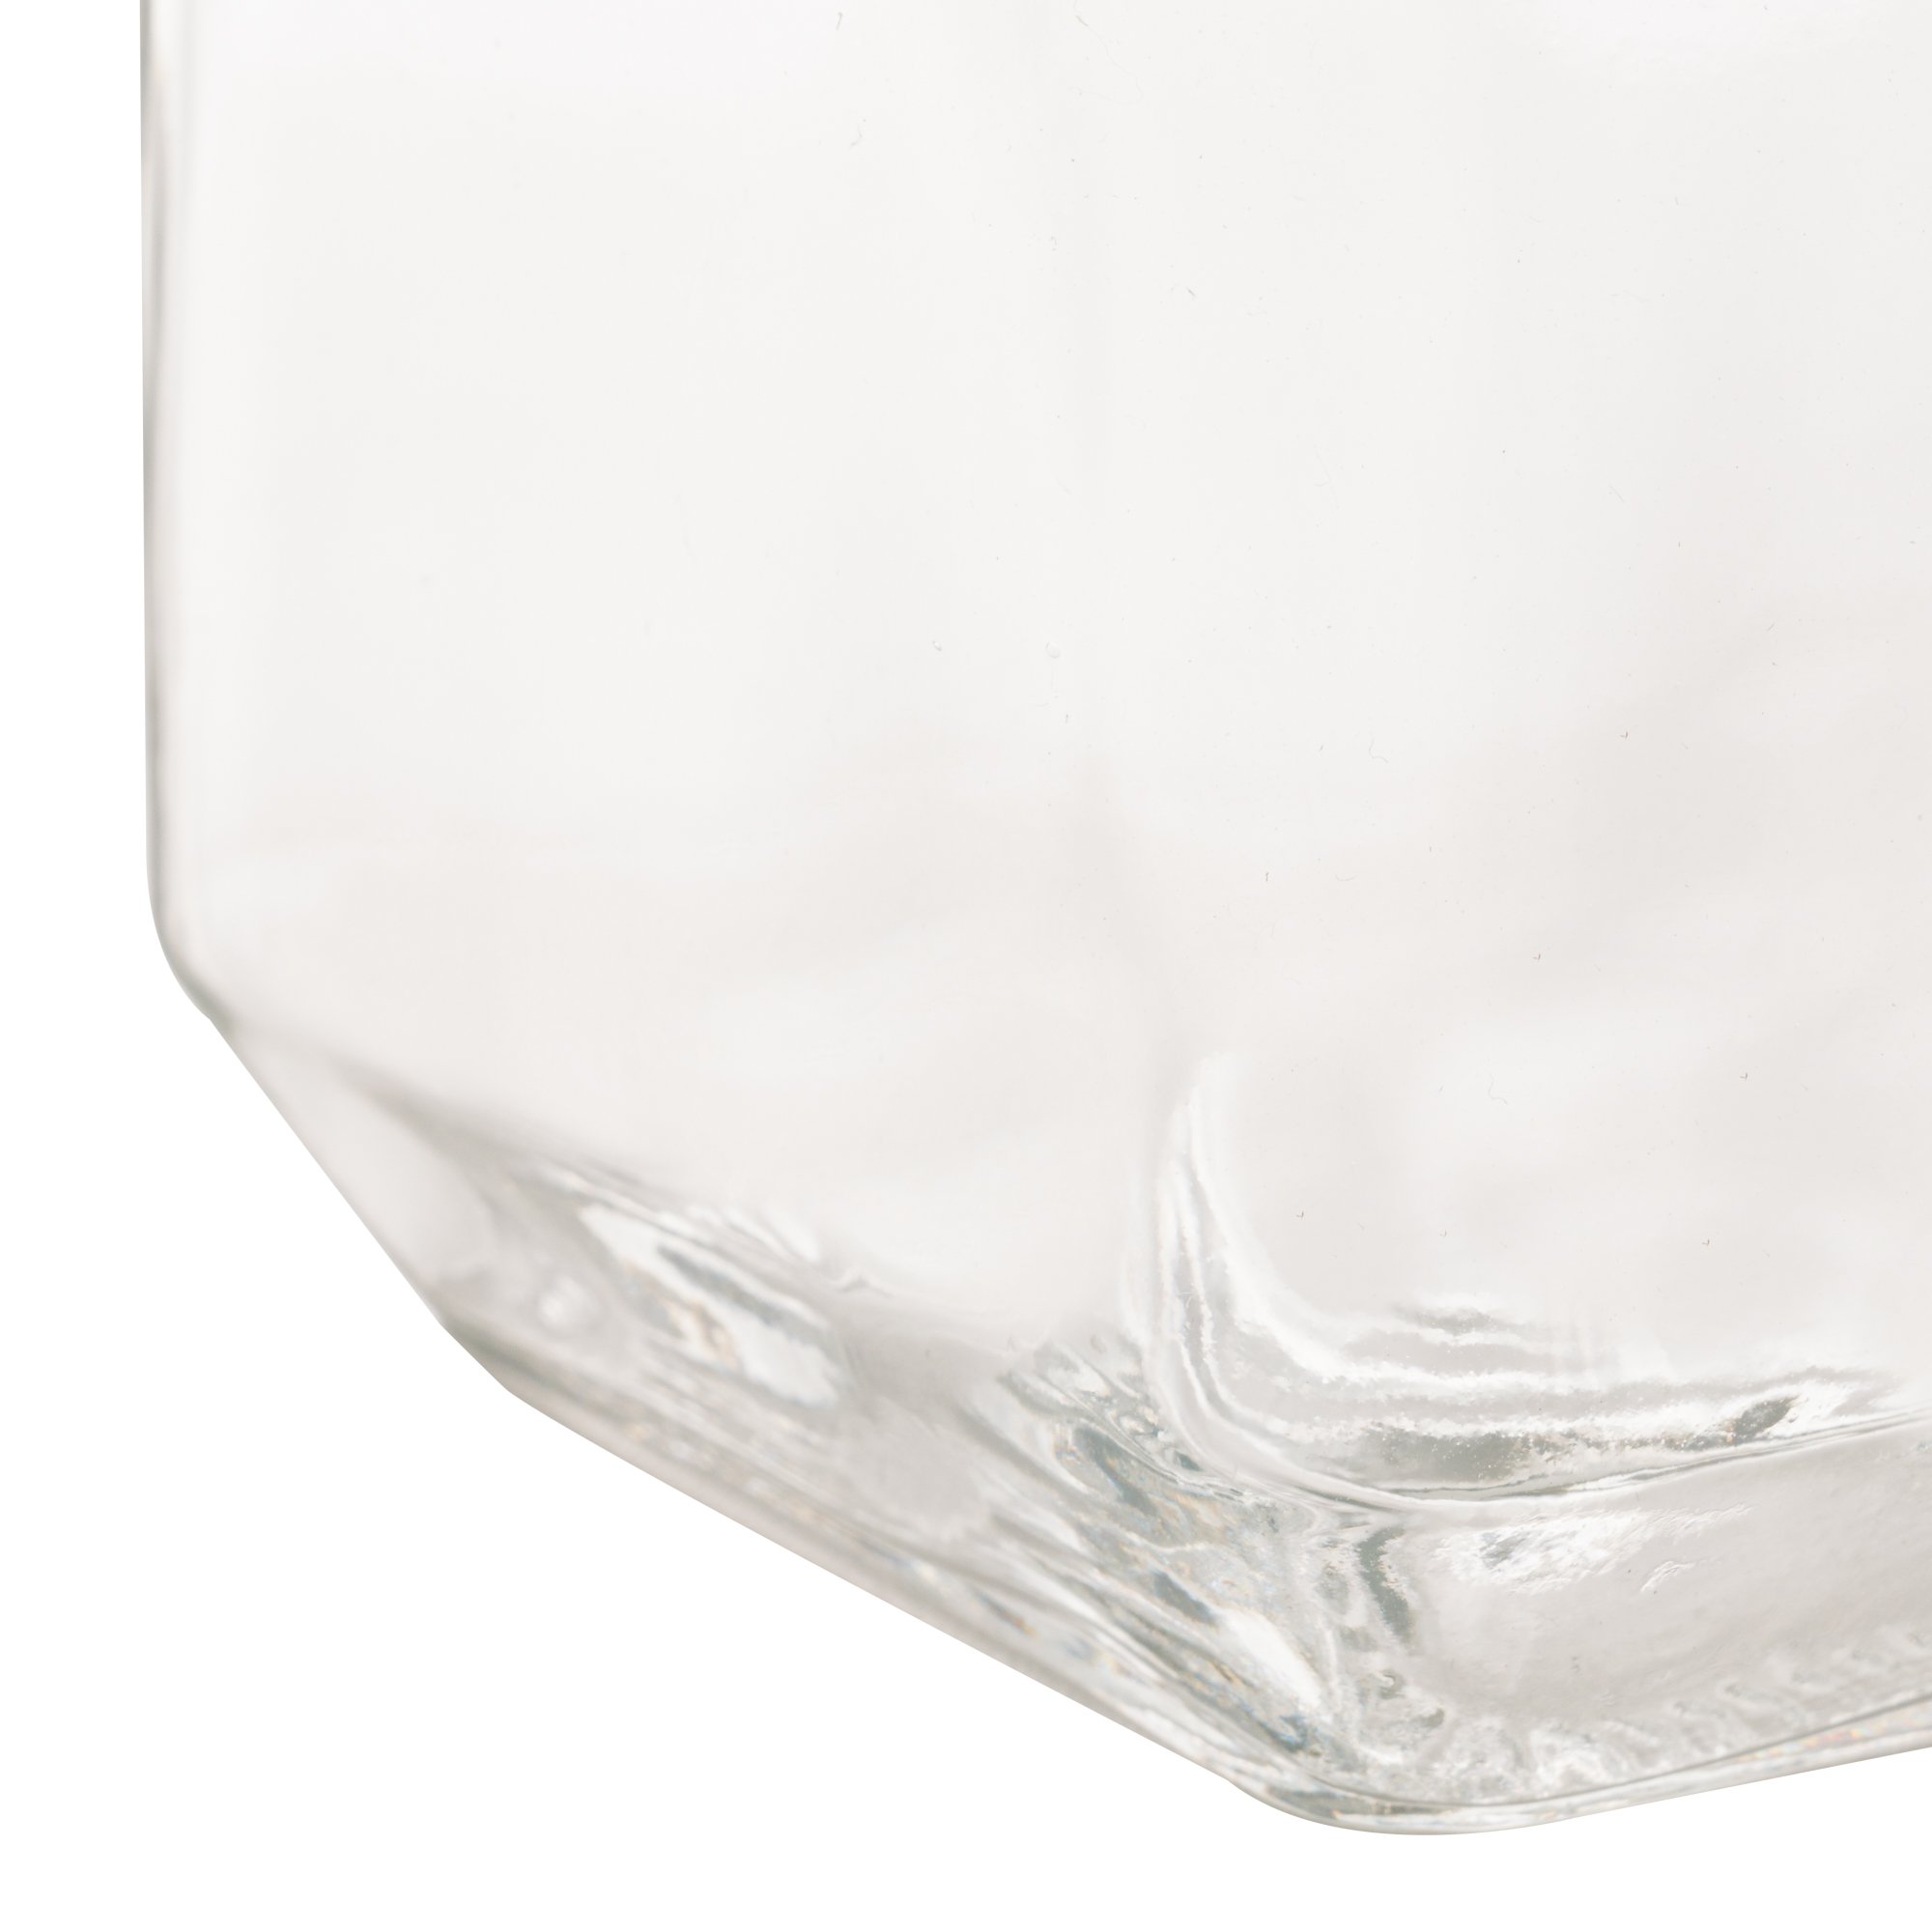 Pote vidro borossilicato com tampa de metal sortida - 750ml - 5